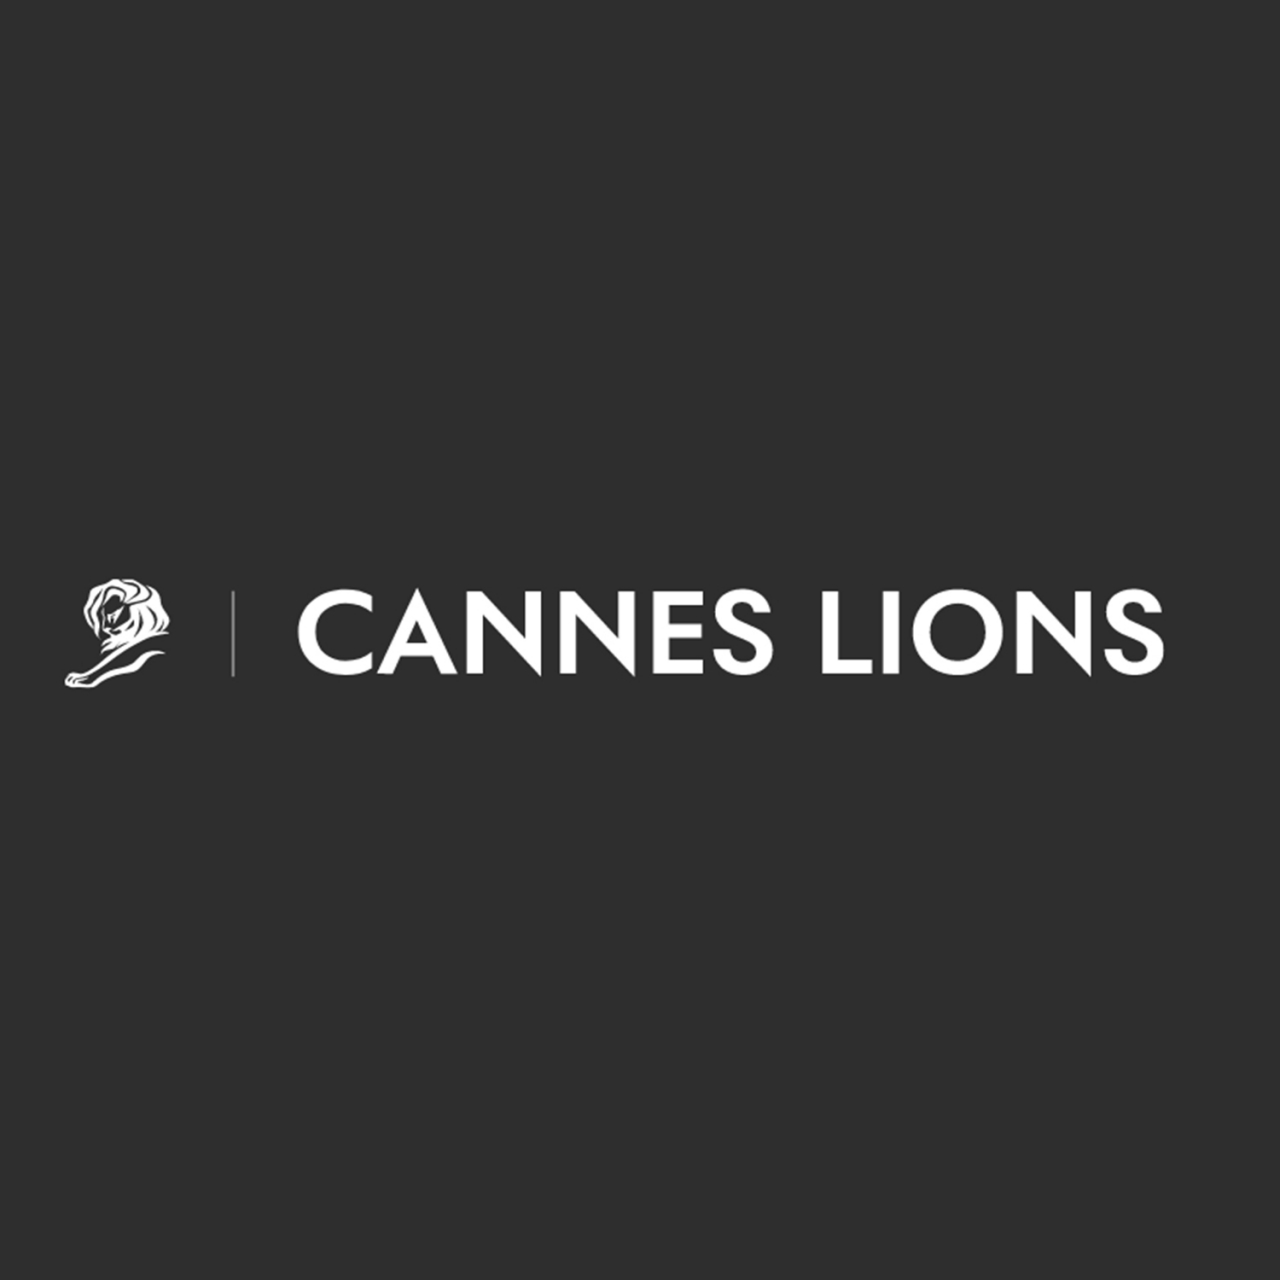 Cannes Lions 2021